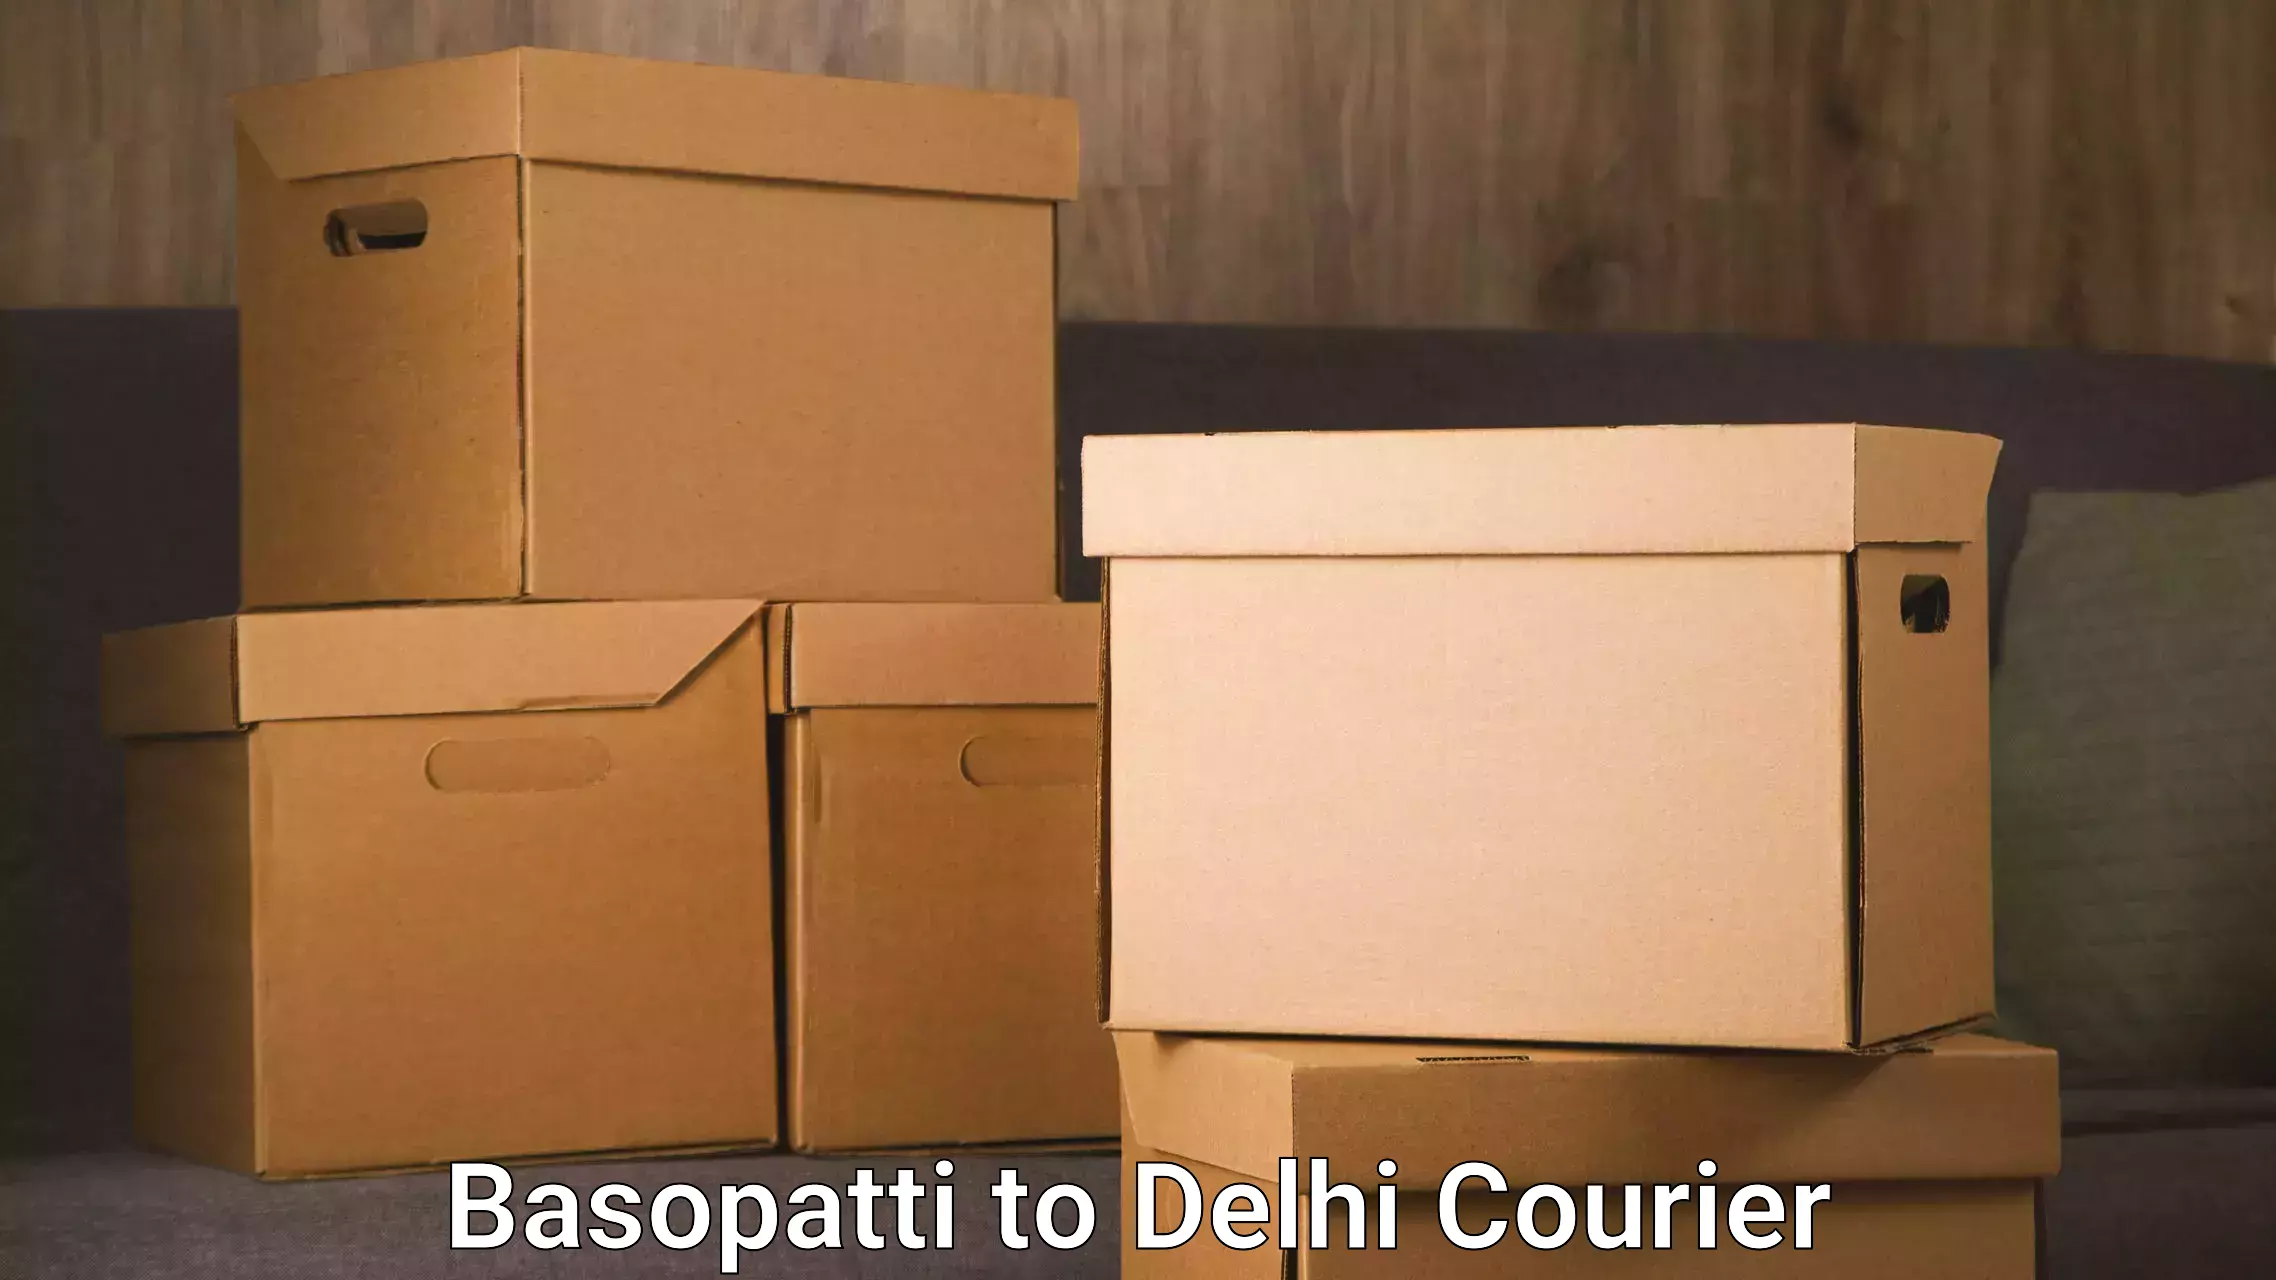 Furniture relocation experts Basopatti to Delhi